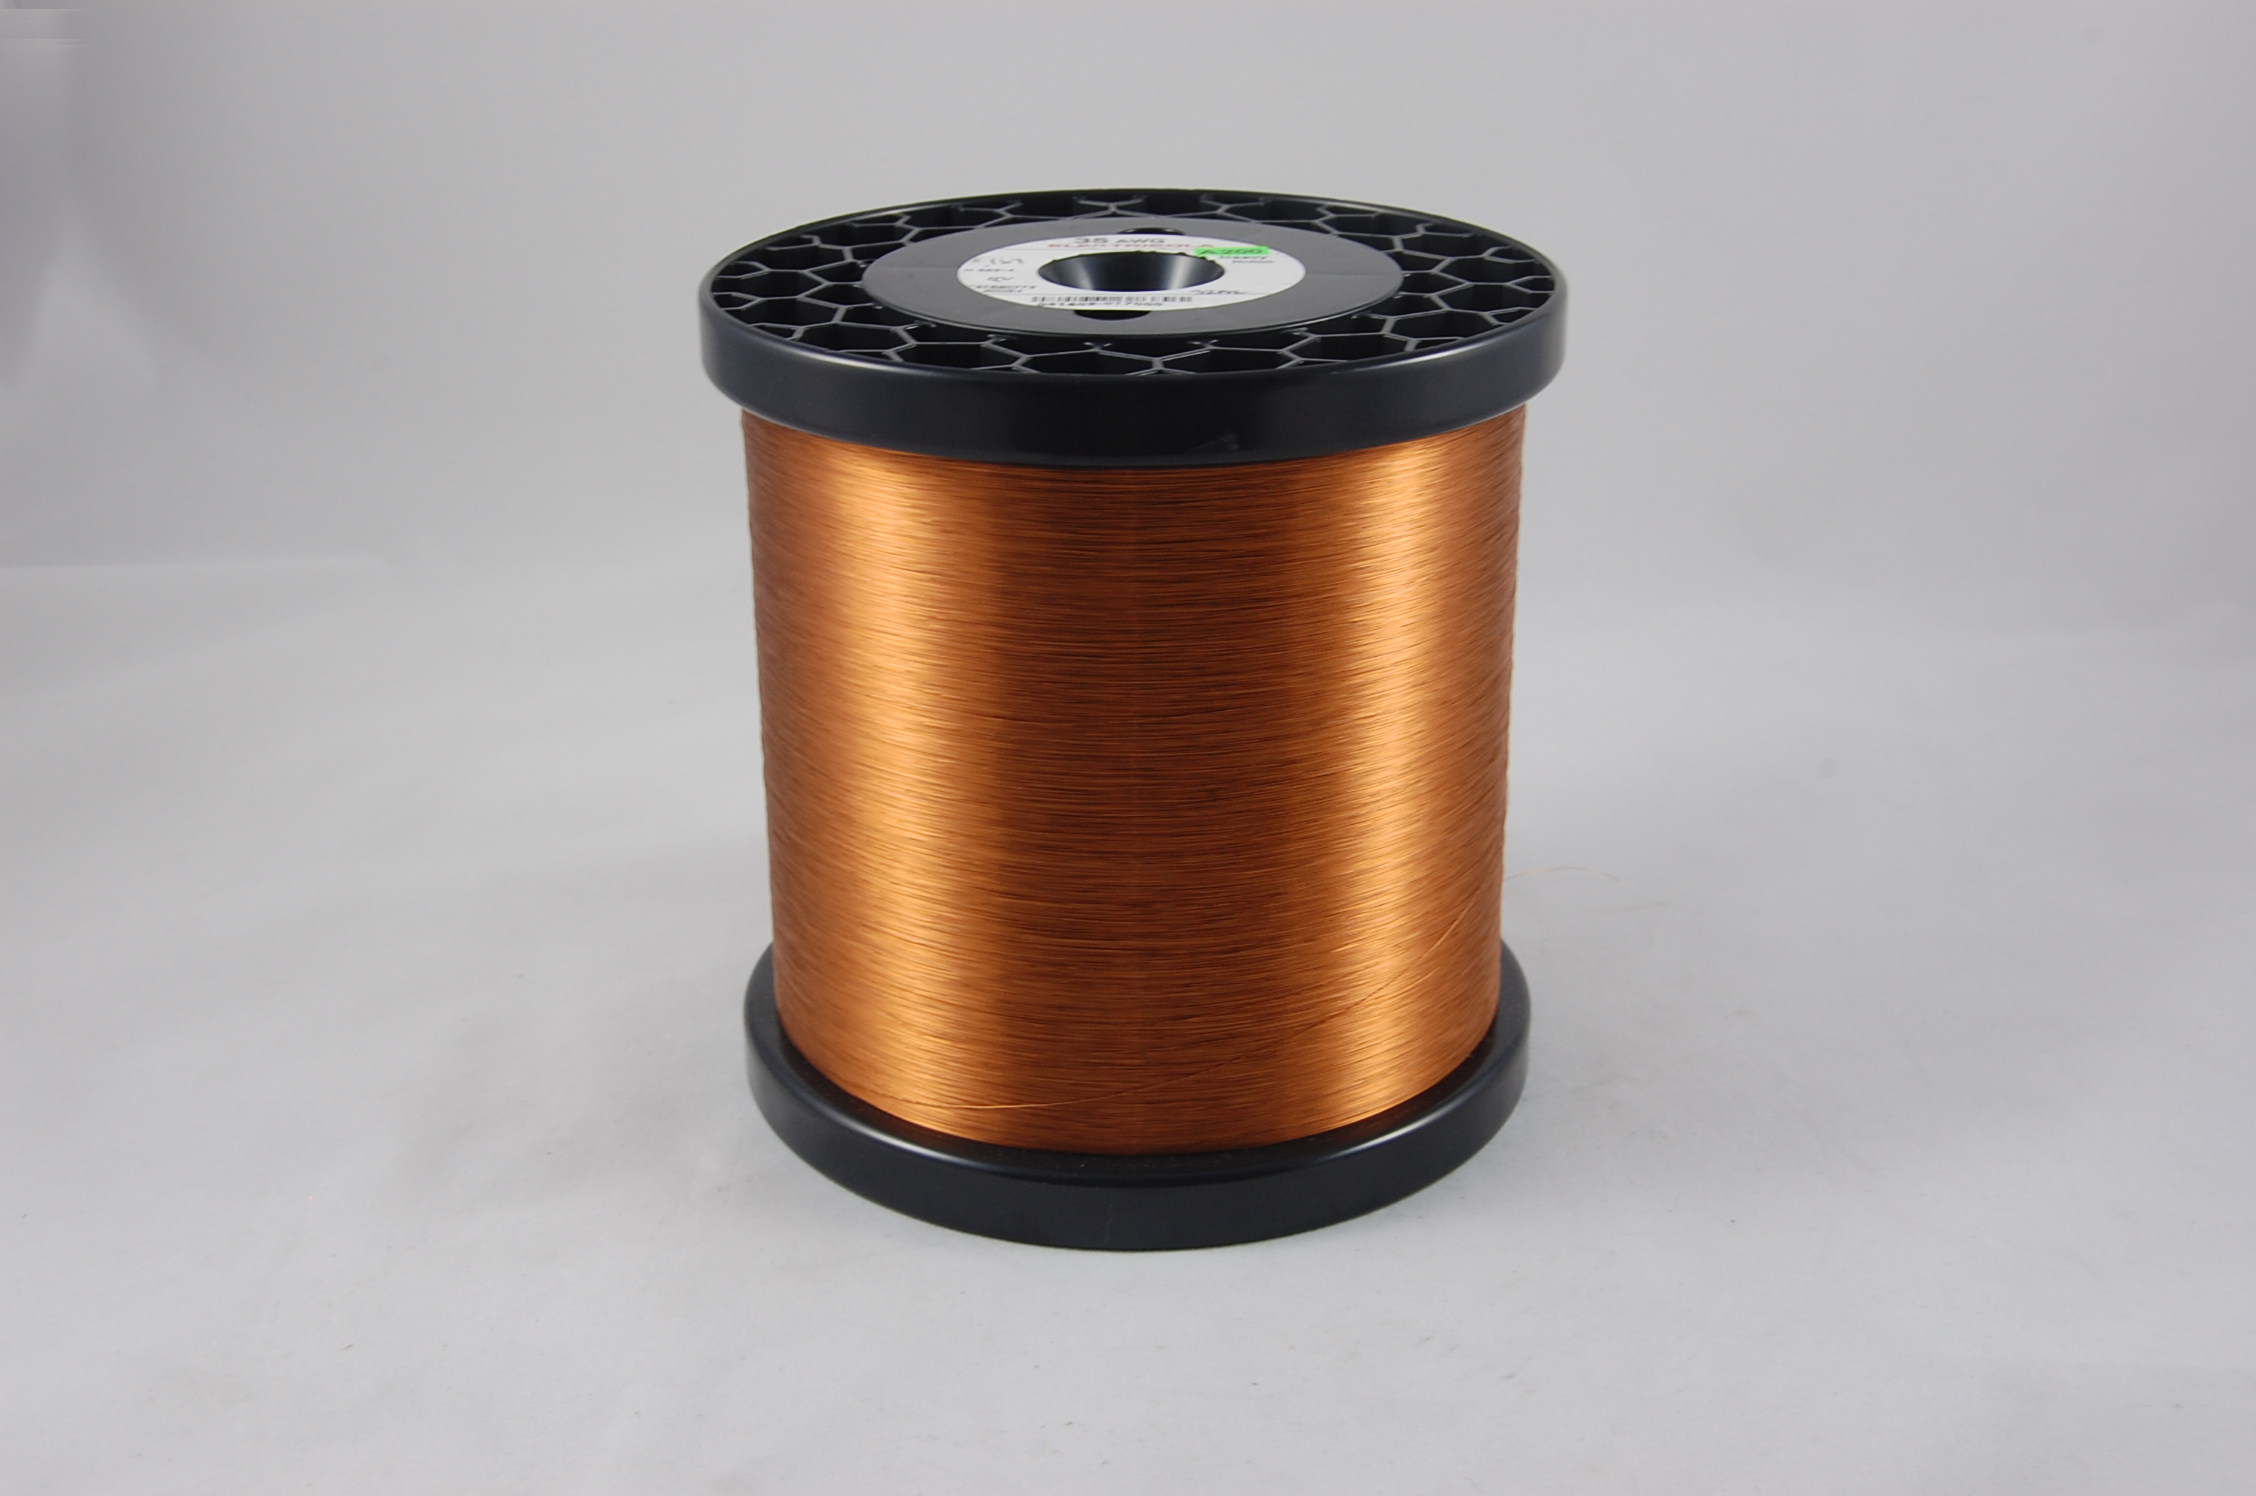 #42 Heavy Amidester 200 Round MW 74 Copper Magnet Wire 200°C, copper,  14 LB 6" x 6" spool (average wght.)